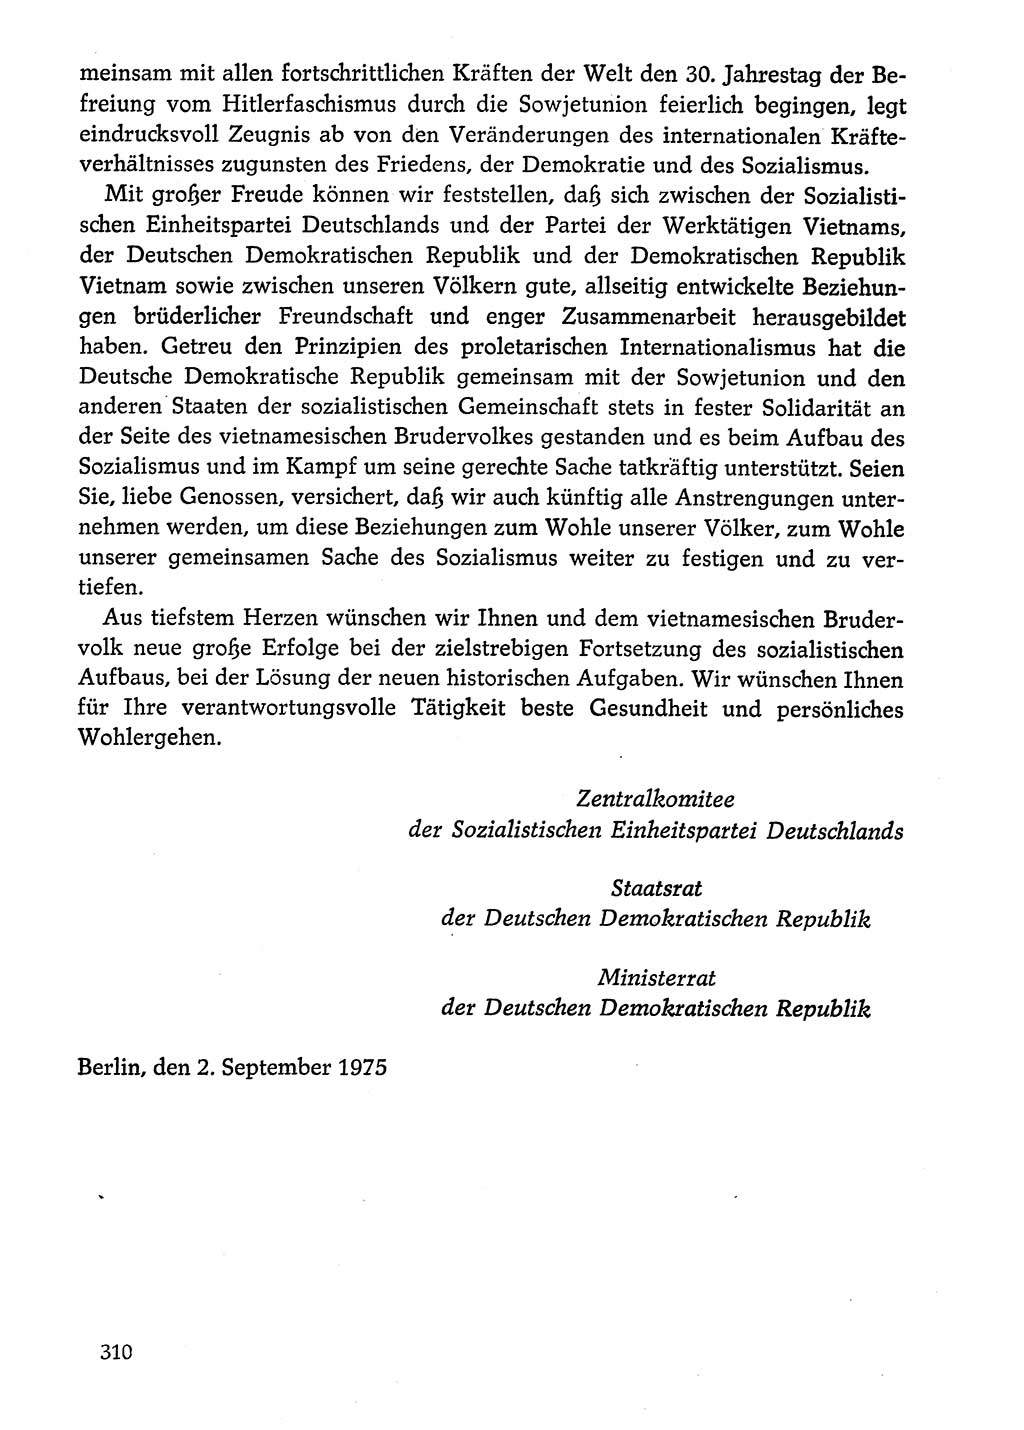 Dokumente der Sozialistischen Einheitspartei Deutschlands (SED) [Deutsche Demokratische Republik (DDR)] 1974-1975, Seite 310 (Dok. SED DDR 1978, Bd. ⅩⅤ, S. 310)